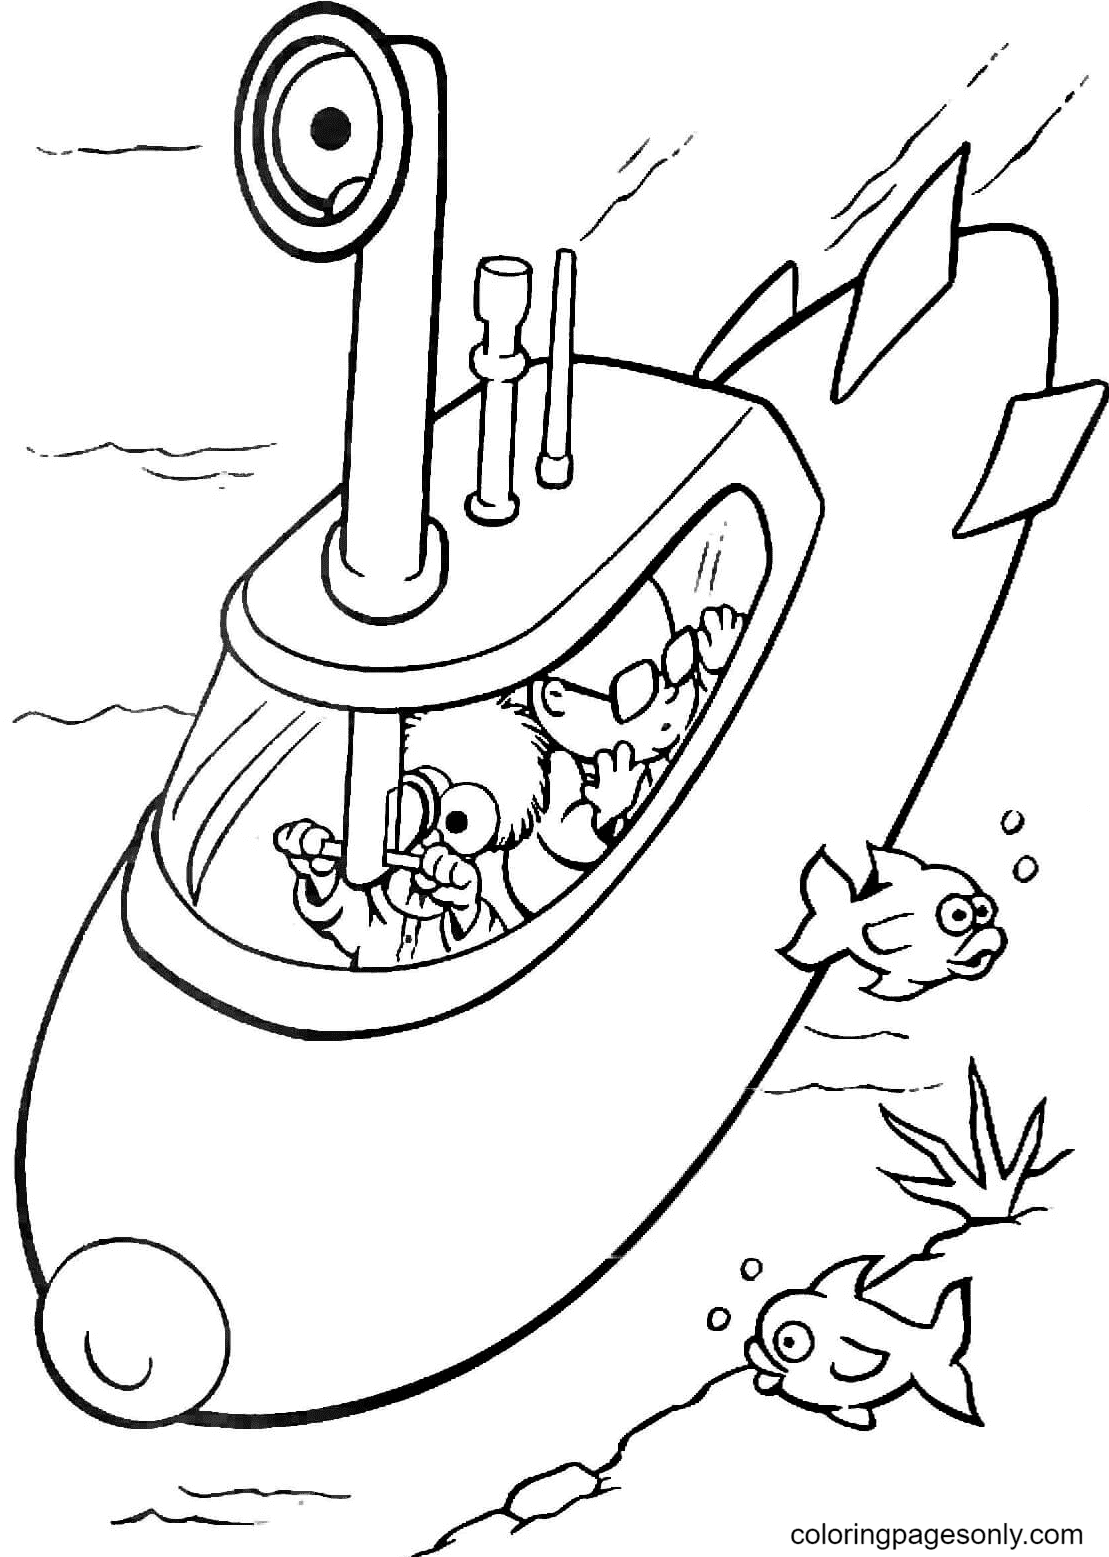 Стакан и Бунзен на подводной лодке из «Маппет-бэби»